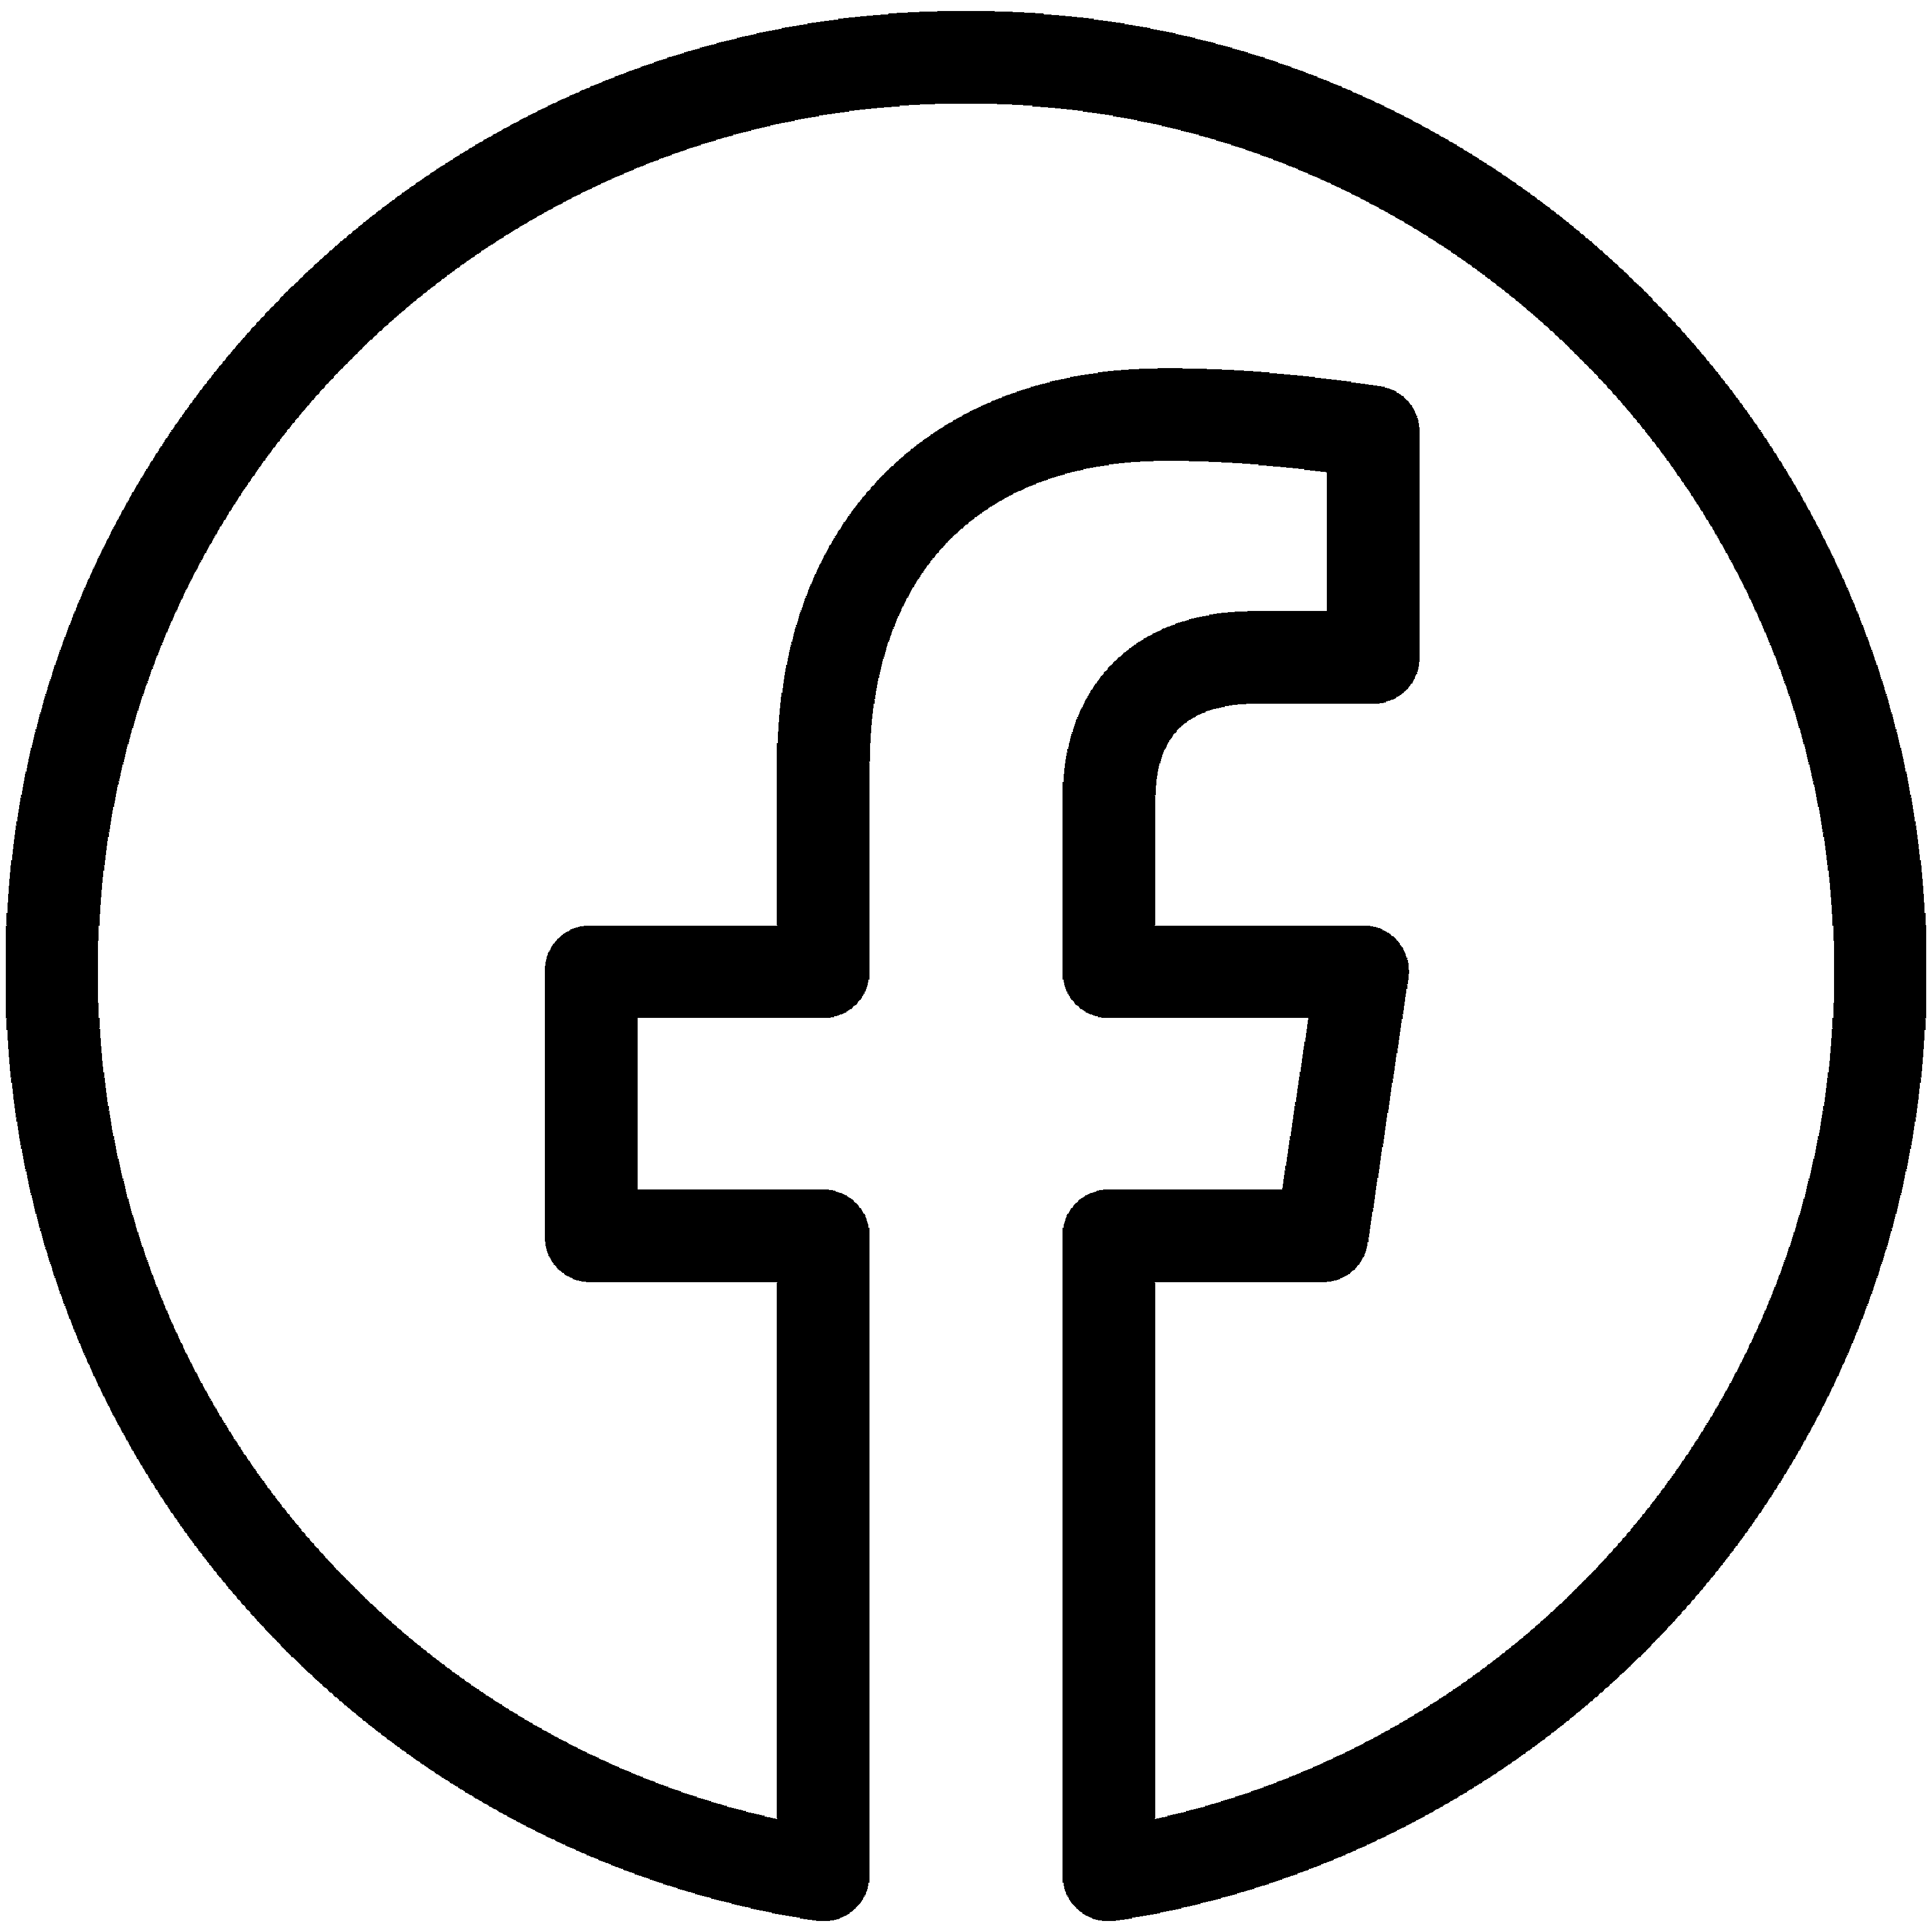 Un pictogramme noir représentant le logo de Facebook